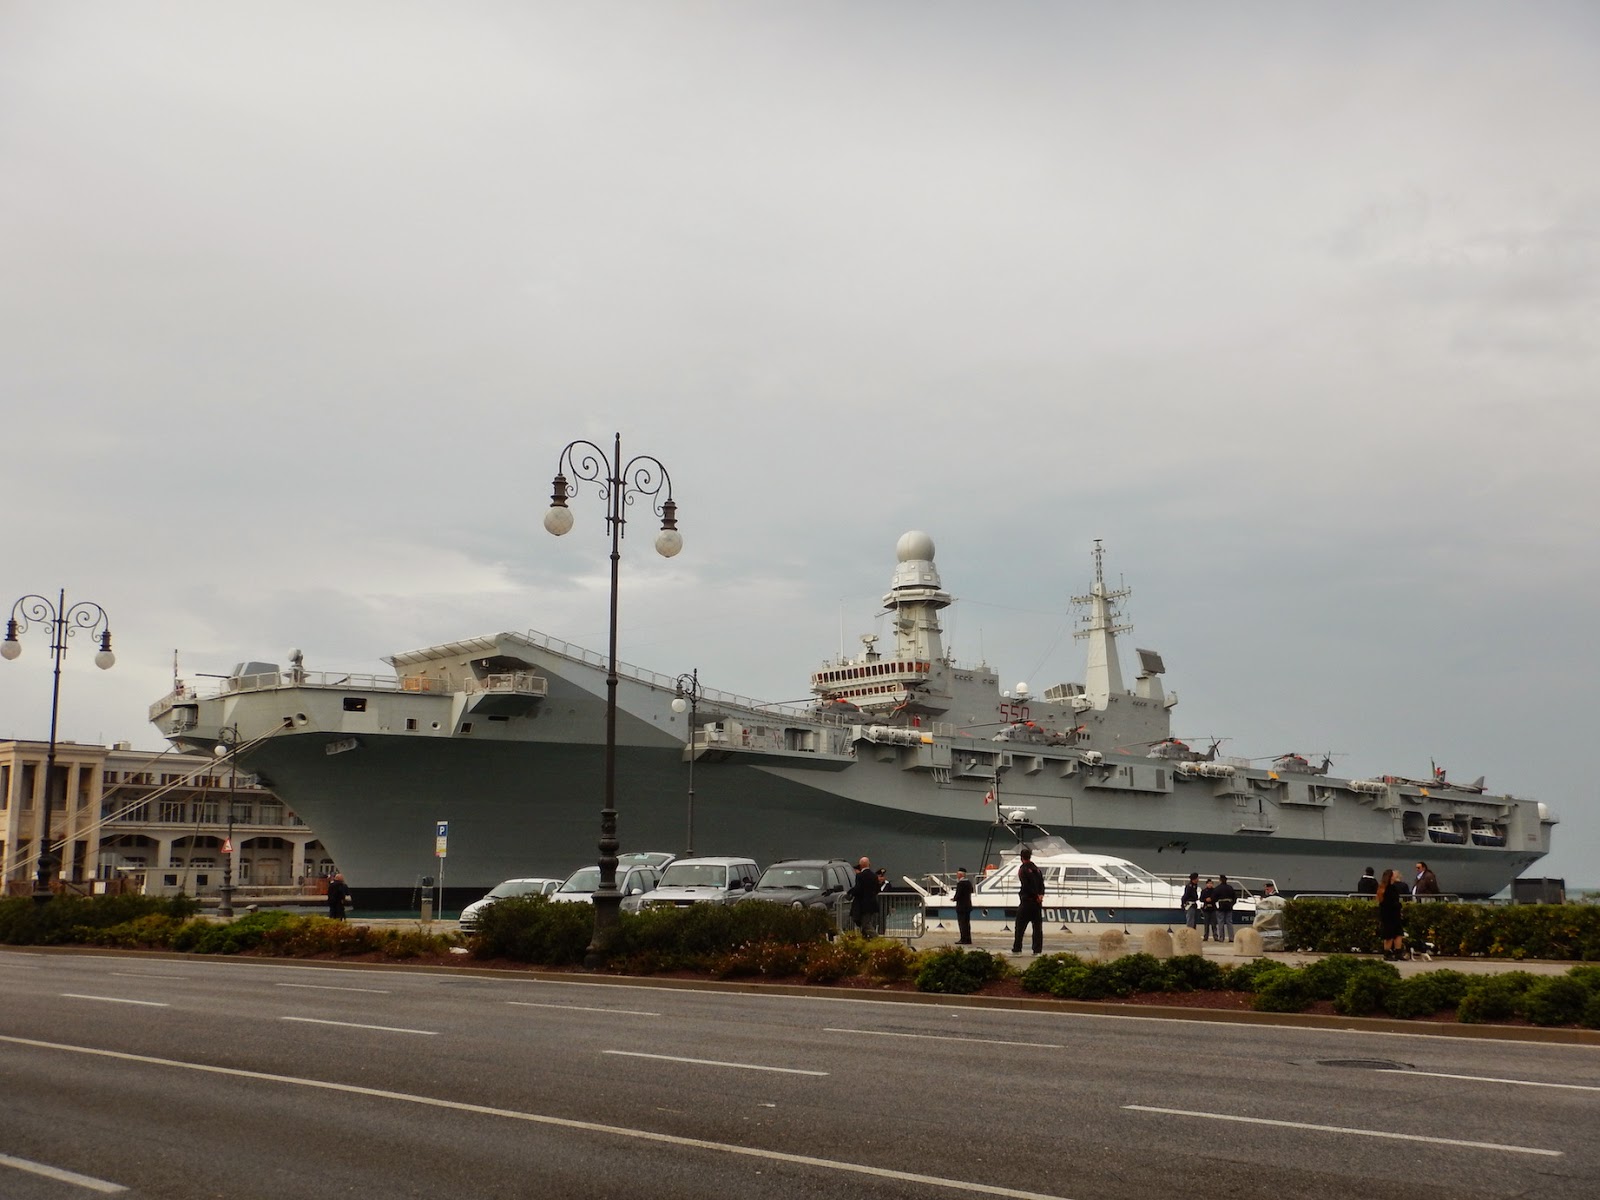 La portaerei italiana Cavour nel porto di Trieste il 5.11.2014 in occasione delle celebrazioni militari per il sessantesimo anniversario dell'inizio dell'amministrazione "civile" di Trieste.